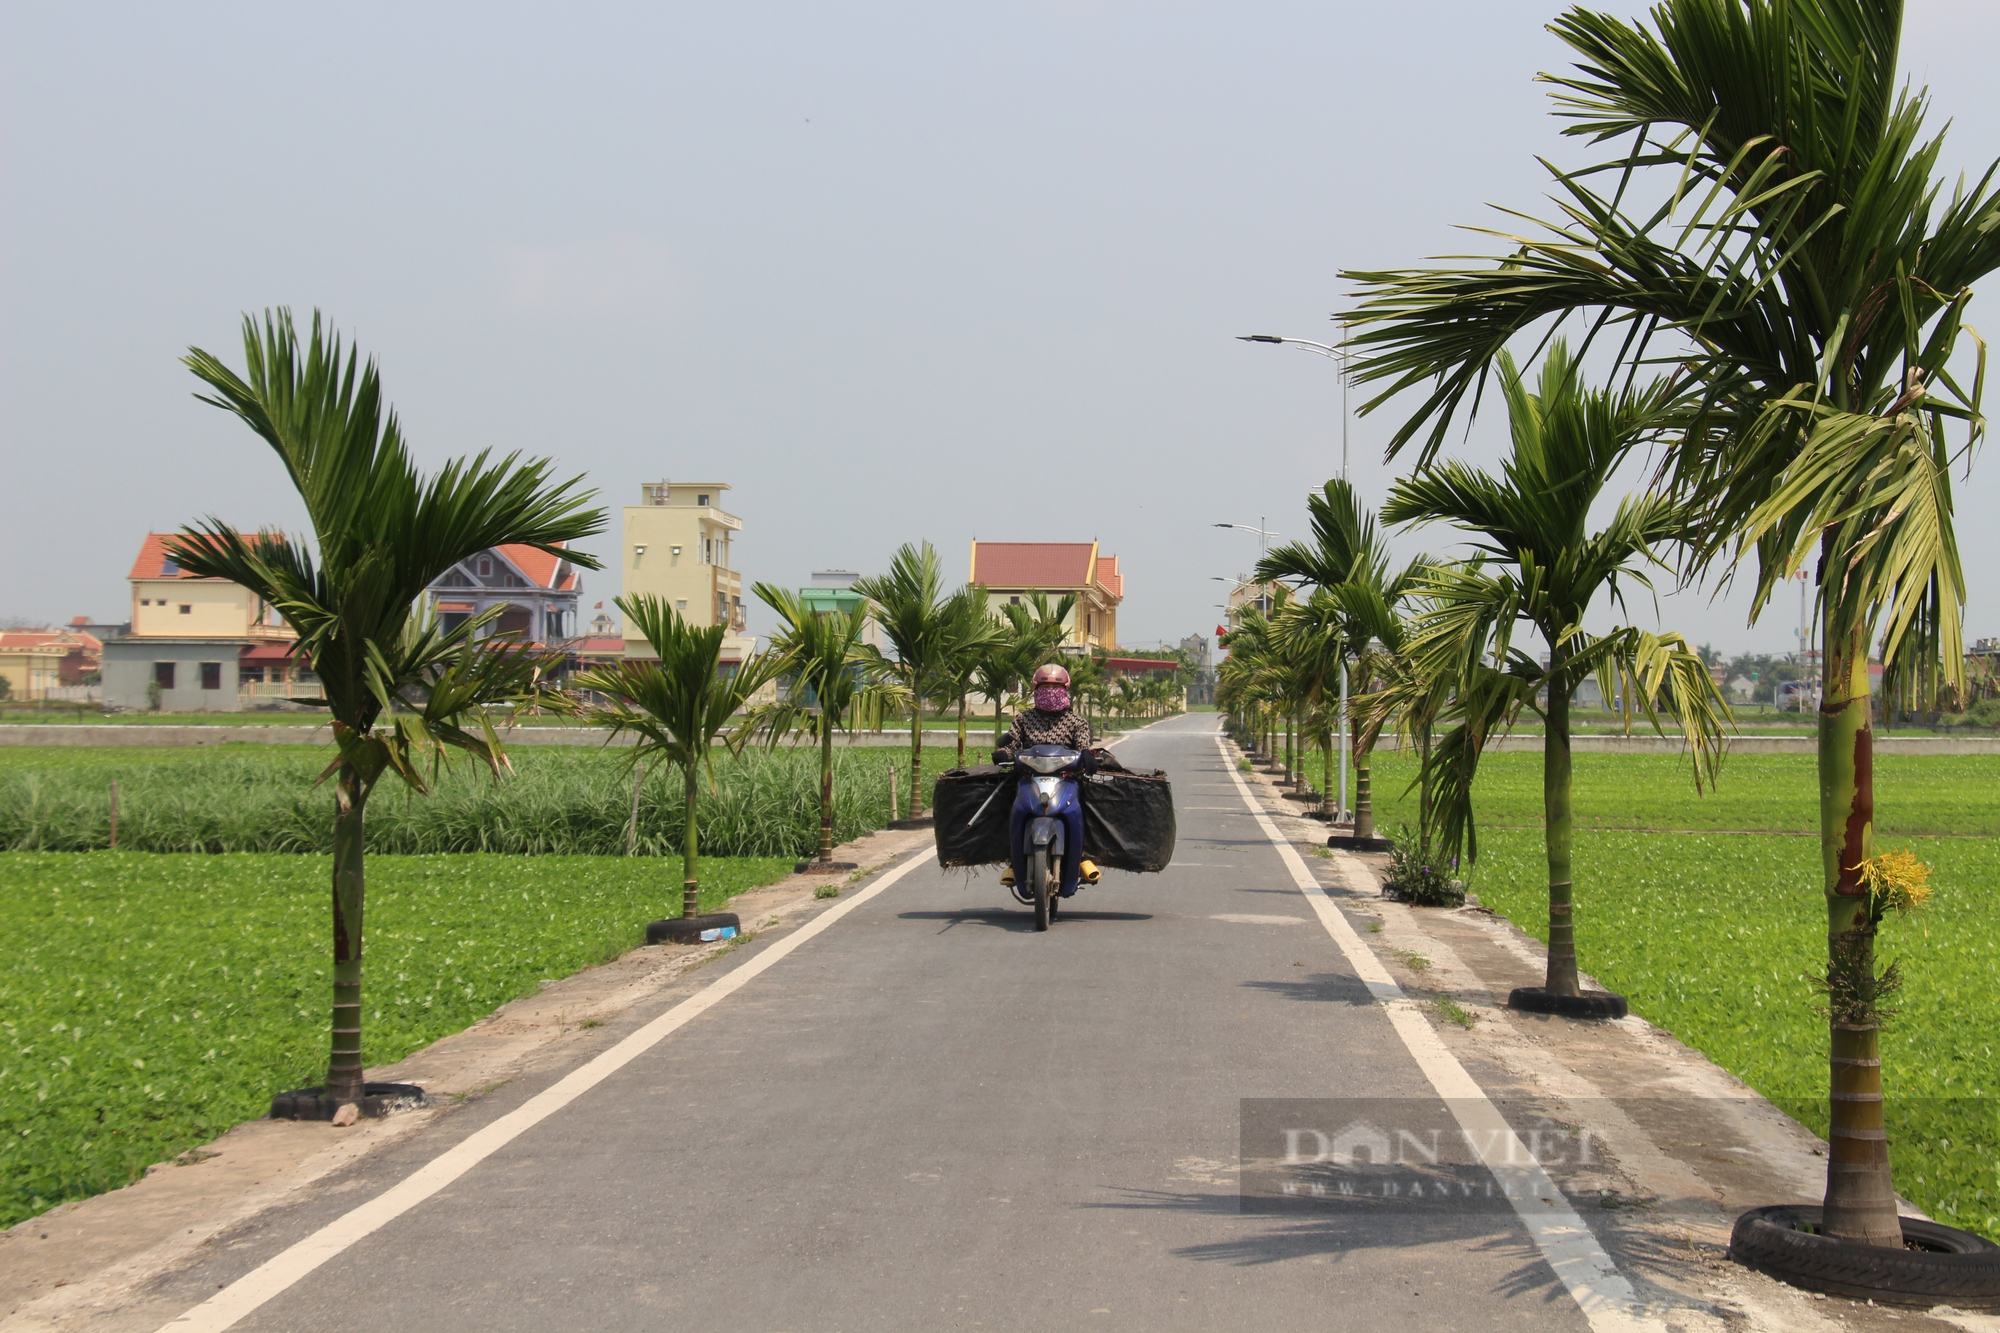 Về xã nông thôn mới kiểu mẫu đầu tiên tỉnh Nam Định, đường làng, ngõ xóm thông suốt, hai bên đường hàng cau xanh mướt - Ảnh 7.